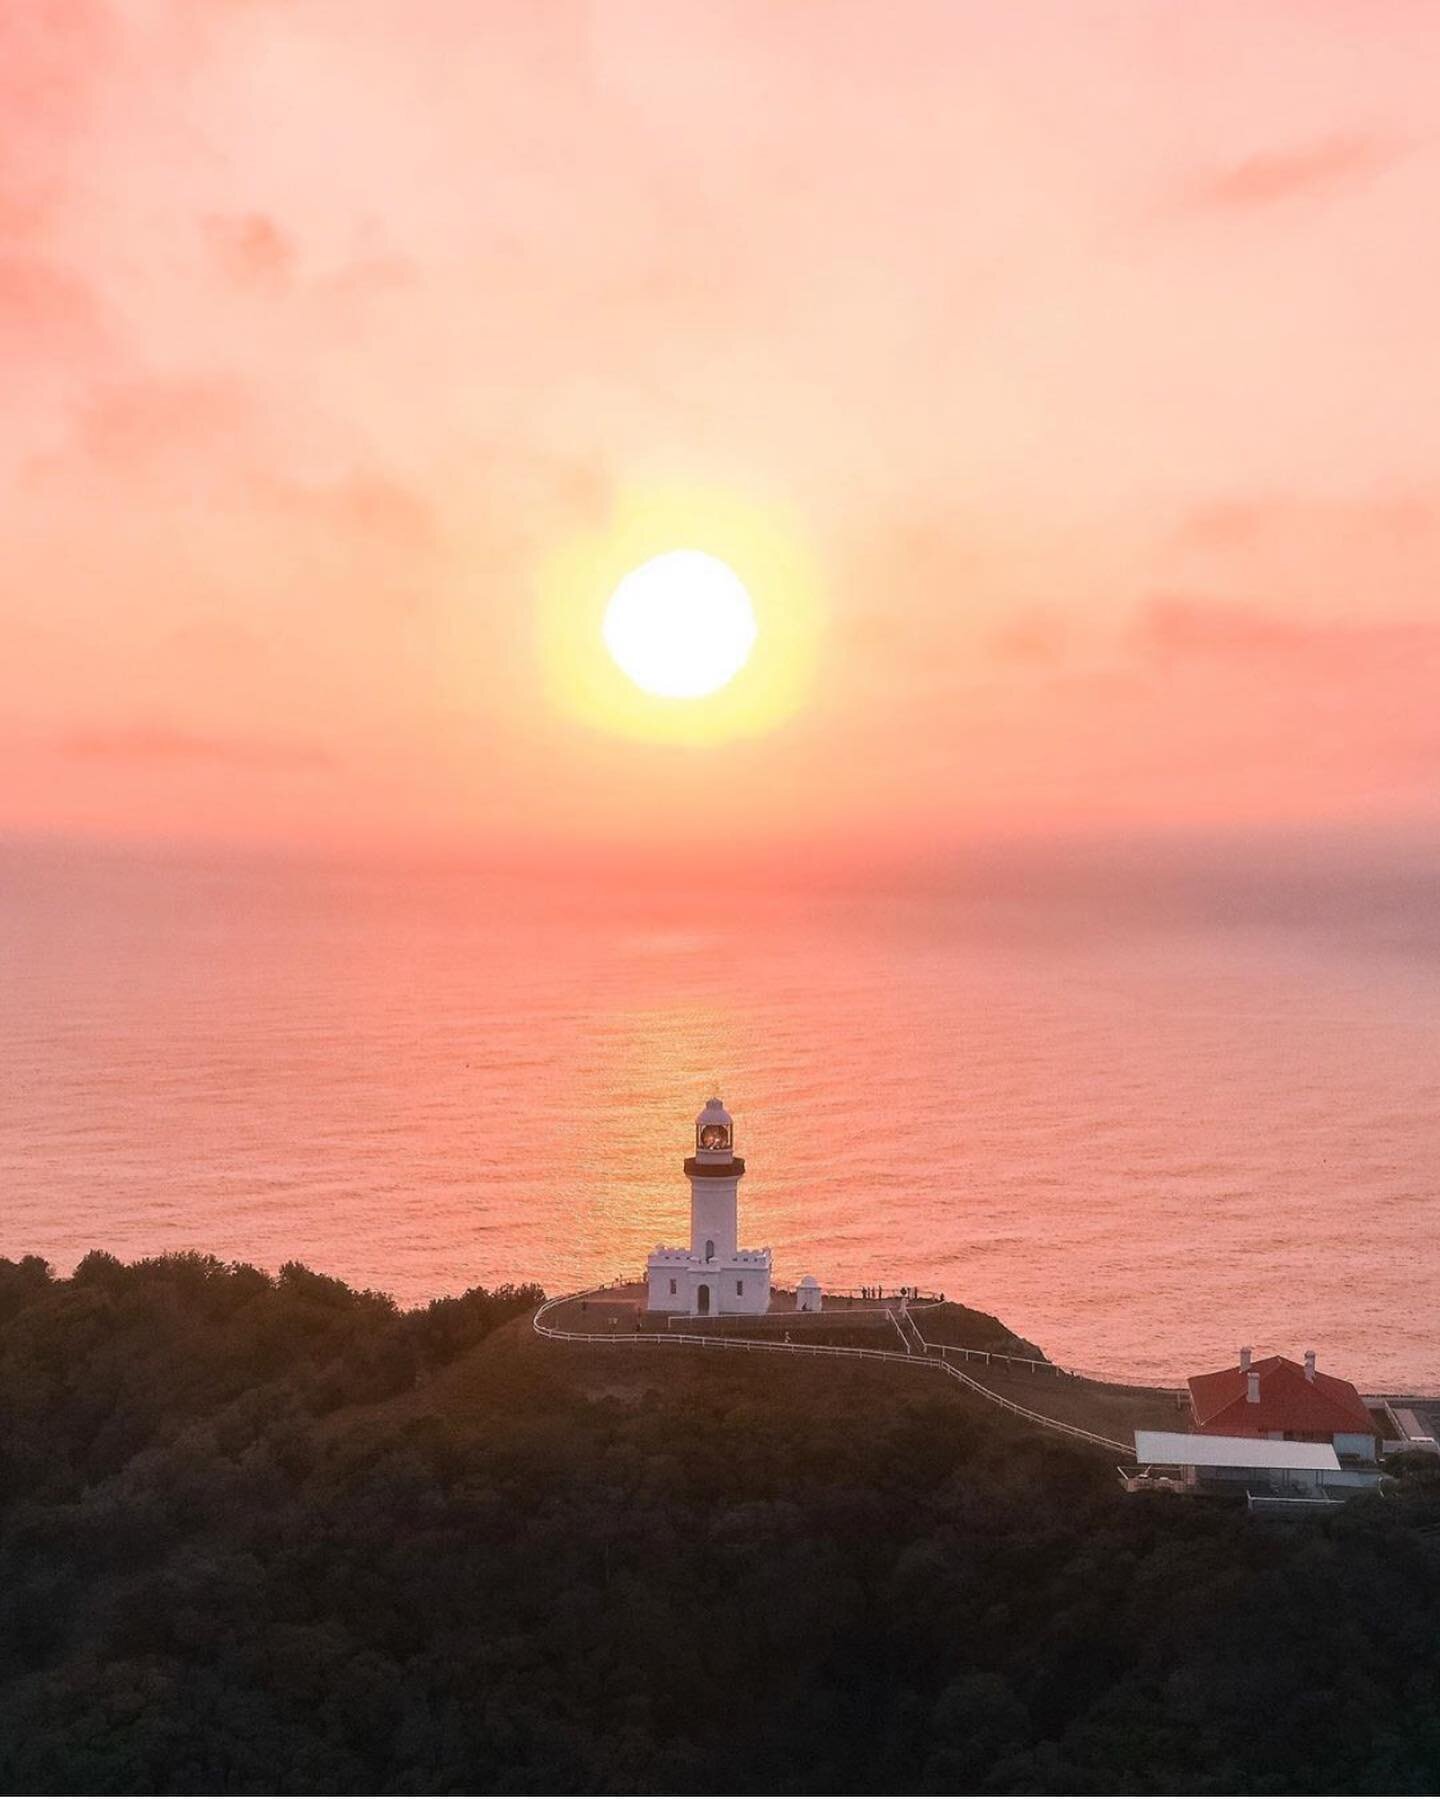 Sunrise at the Lighthouse 🌅
&bull;
Regram 📷 @saxonkent